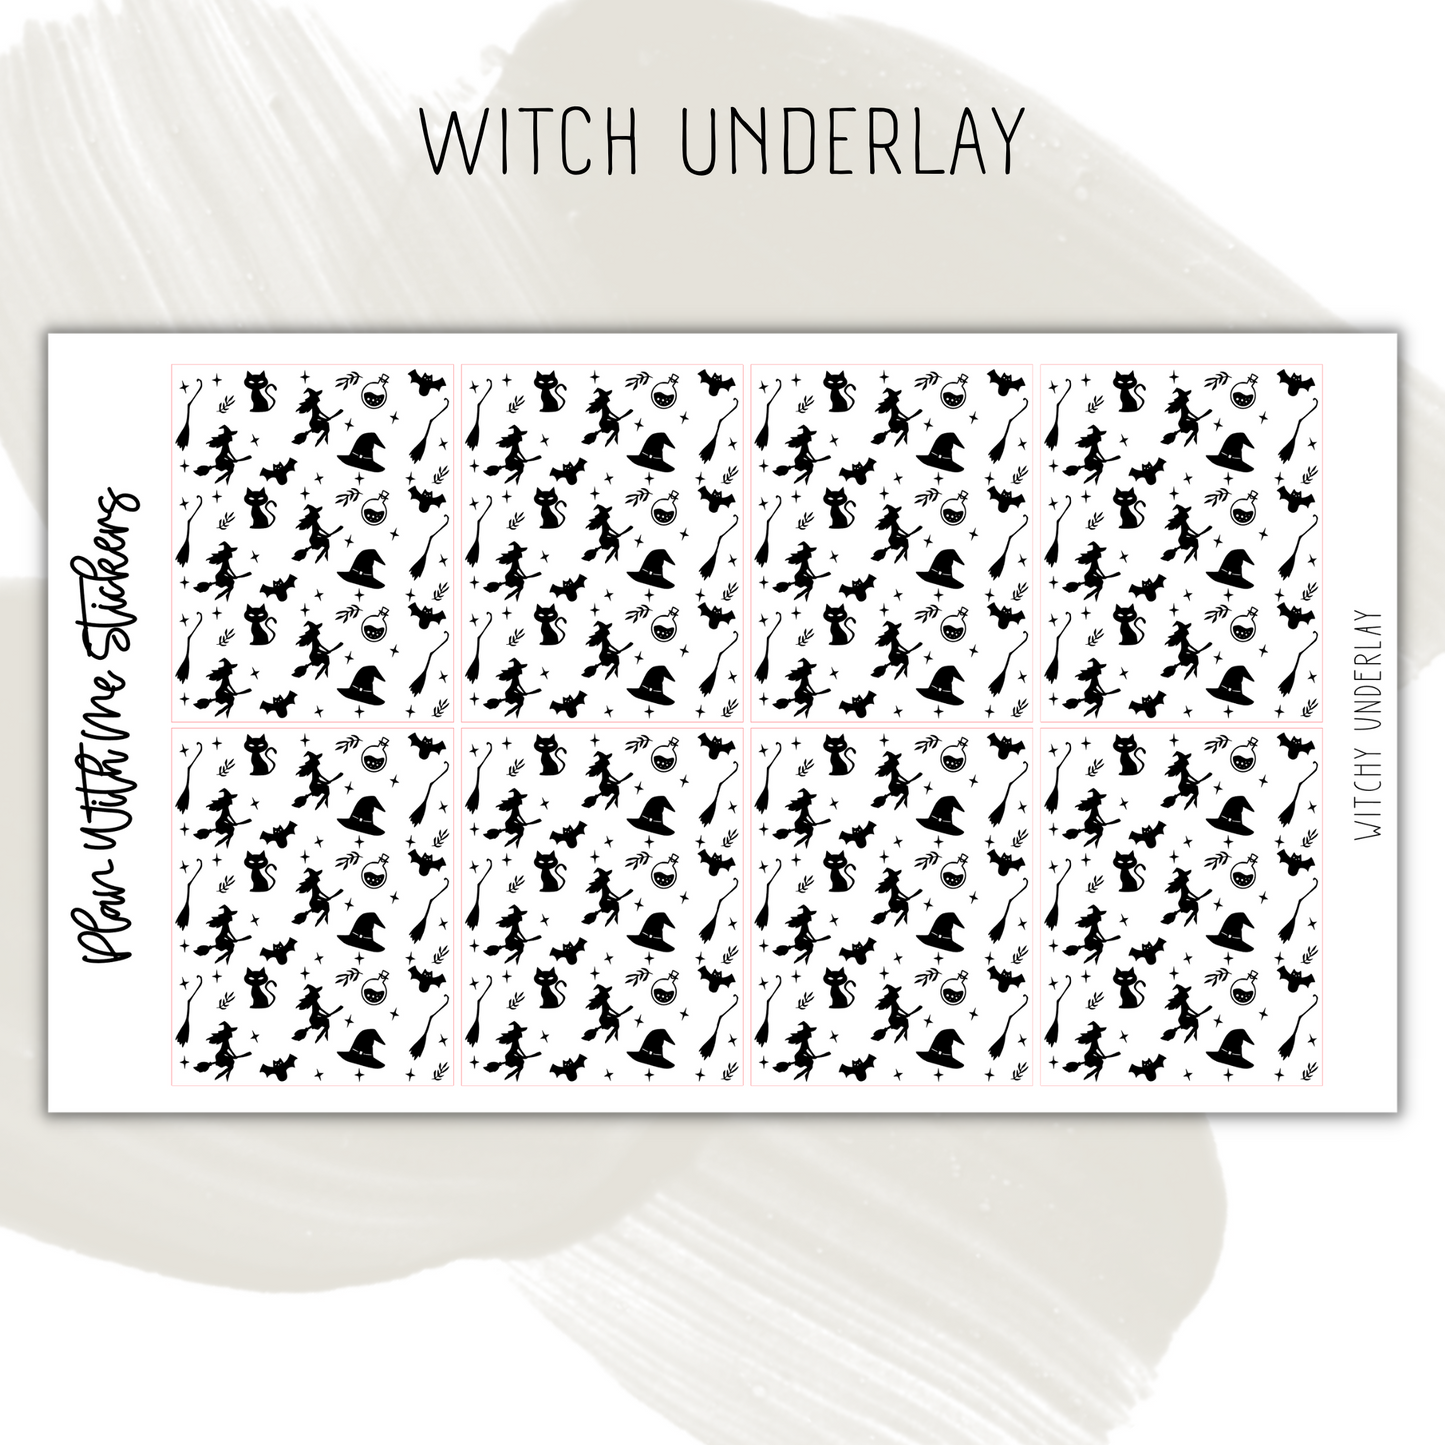 Witch Underlay